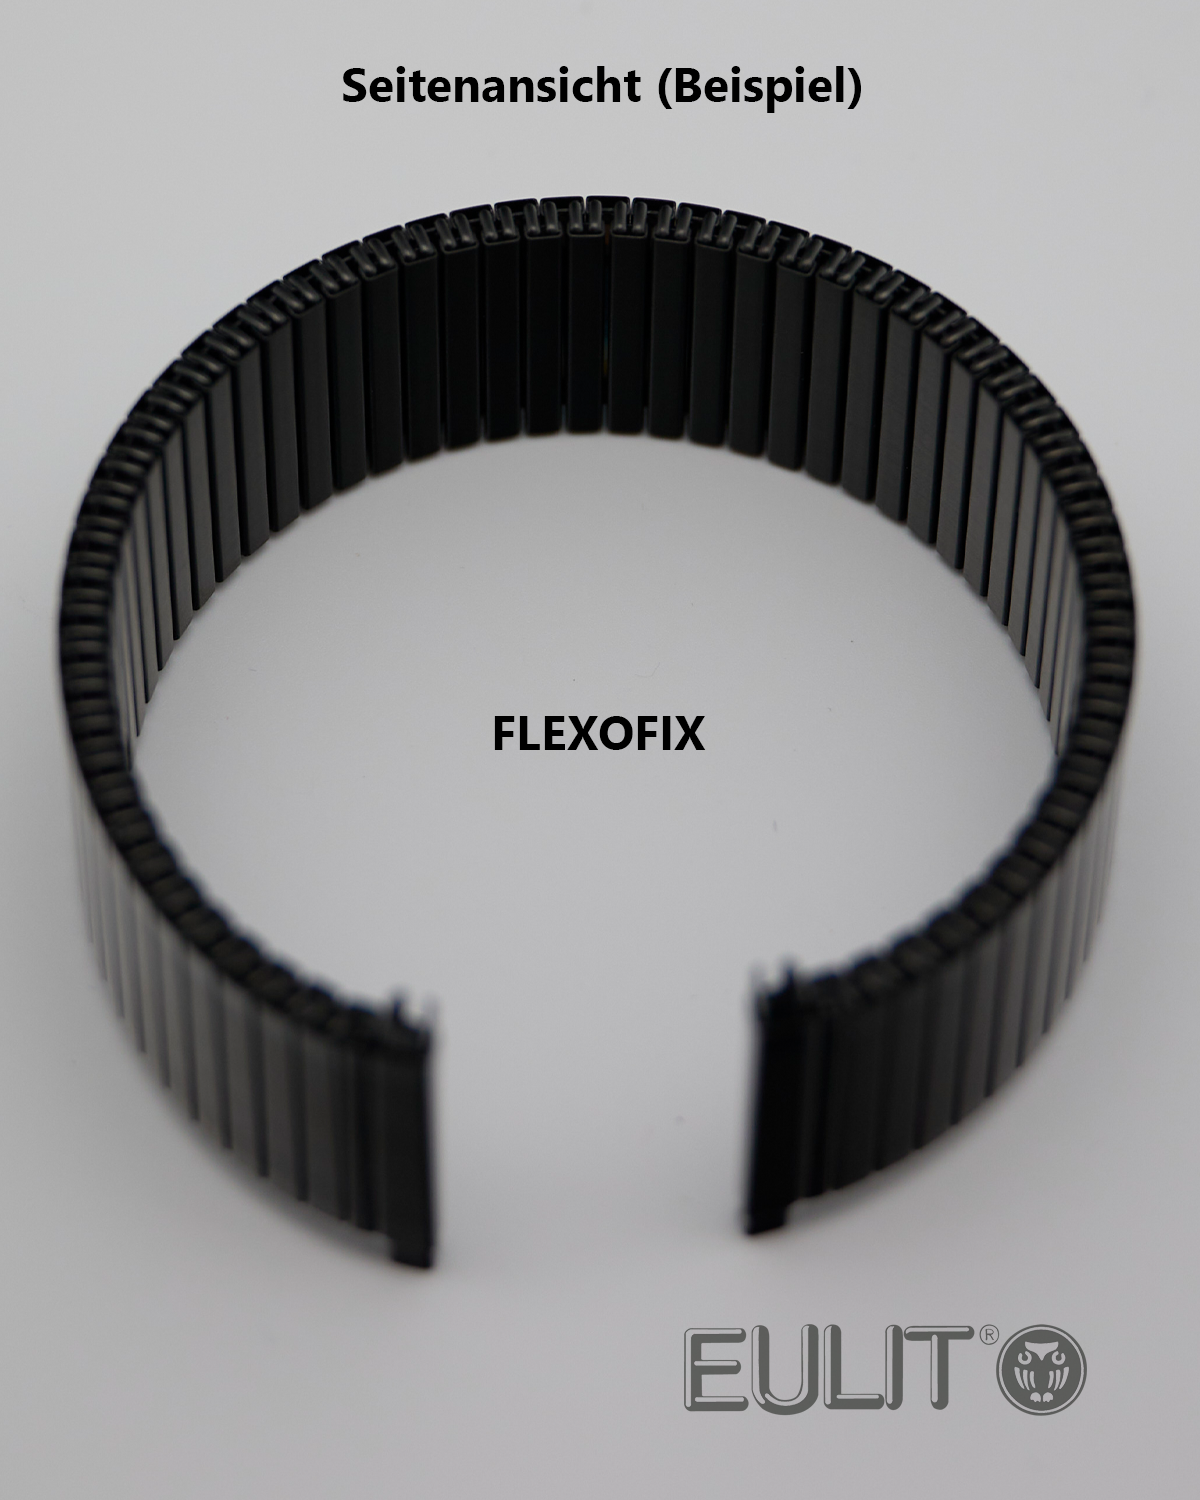 76-411201 EULIT FLEXOFIX 20-22 mm Schwarz